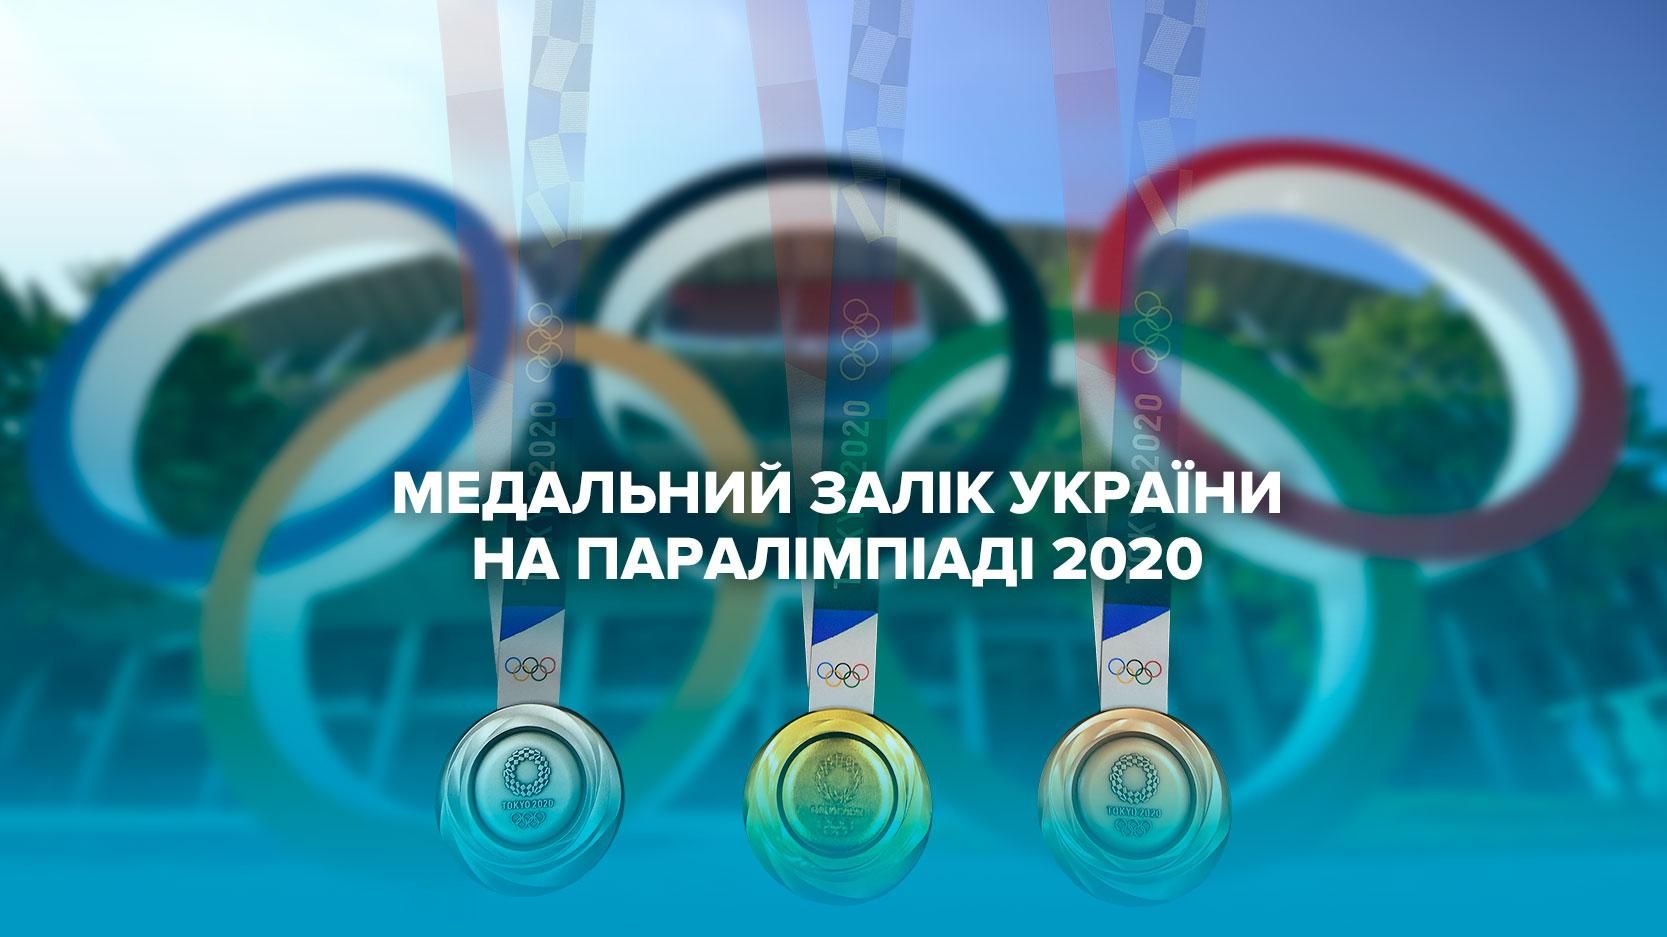 Паралімпіада 2020, Токіо – медальний залік України